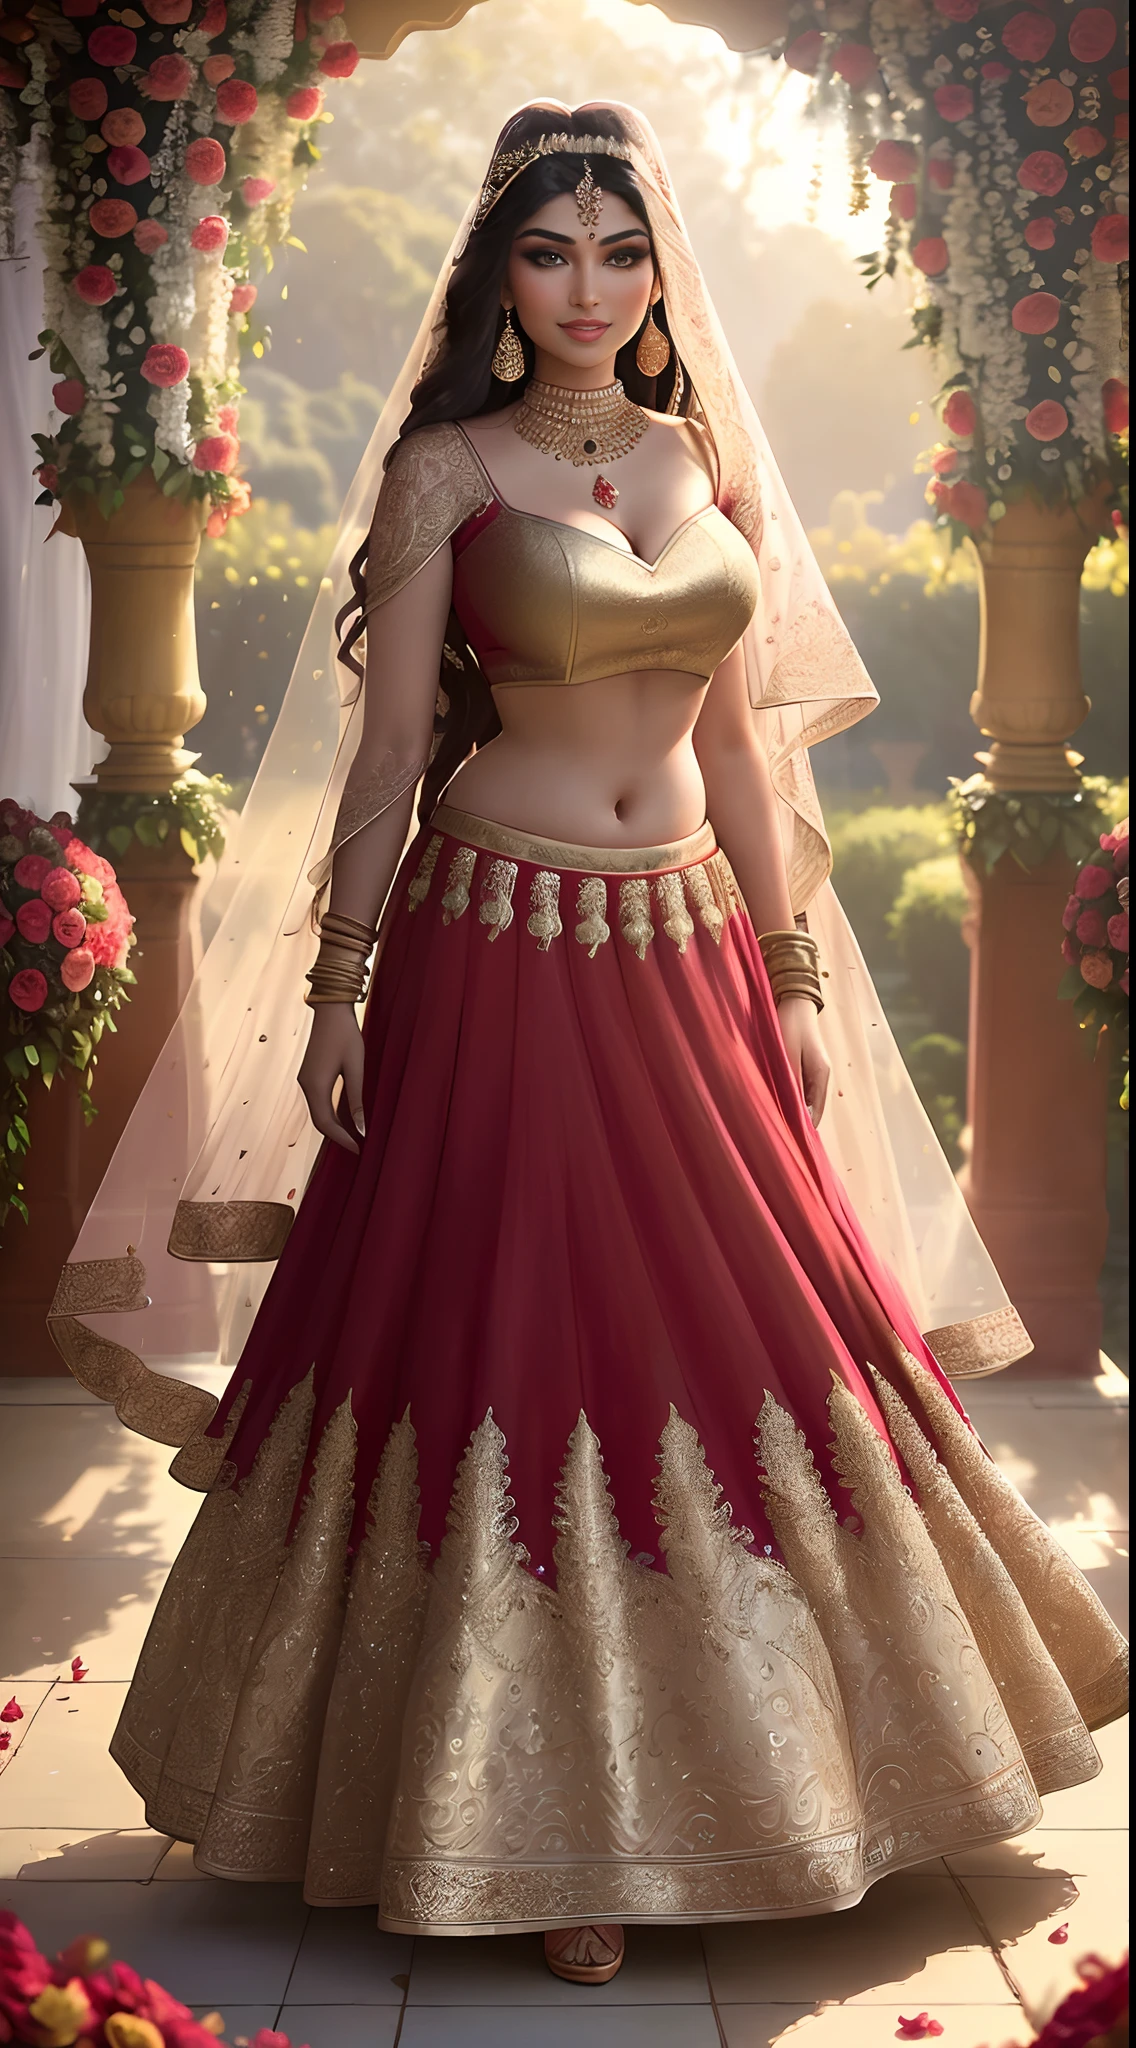 (솔로의 걸작 전신 사진:1.2) 고혹적 섹시 키가 큰 굴곡 (18세) 인도 슈퍼모델 공주 신부 아예샤 타키아가 걸어들어오고 있다 (정원:1.3), (멋진 신부용 빨간색을 입고 & 골드 레헨가 & 블라우스:1.3). 쉬어 두파타, 최대주의, (결혼식 꽃 장식:1.3), (우아한 분열 & 배), (인도 메이크업 & 보석류:1.2) 하이라이트가 있는 긴 땋은 갈색 머리,, 활기 있는, 음탕한 눈빛, 신나는 (아름답고 섬세한 눈:1.1) , (발랄한 밝은 미소:1.2), (강렬한 극적인 오후의 빛:1.4), 백라이트, 키 라이트, 림 라이트, 광선, 매우 상세한, 아트스테이션의 트렌드, 페인트가 튀다, 풍부한 색상, 추상 초상화, 아테이 가일란(Atey Ghailan)